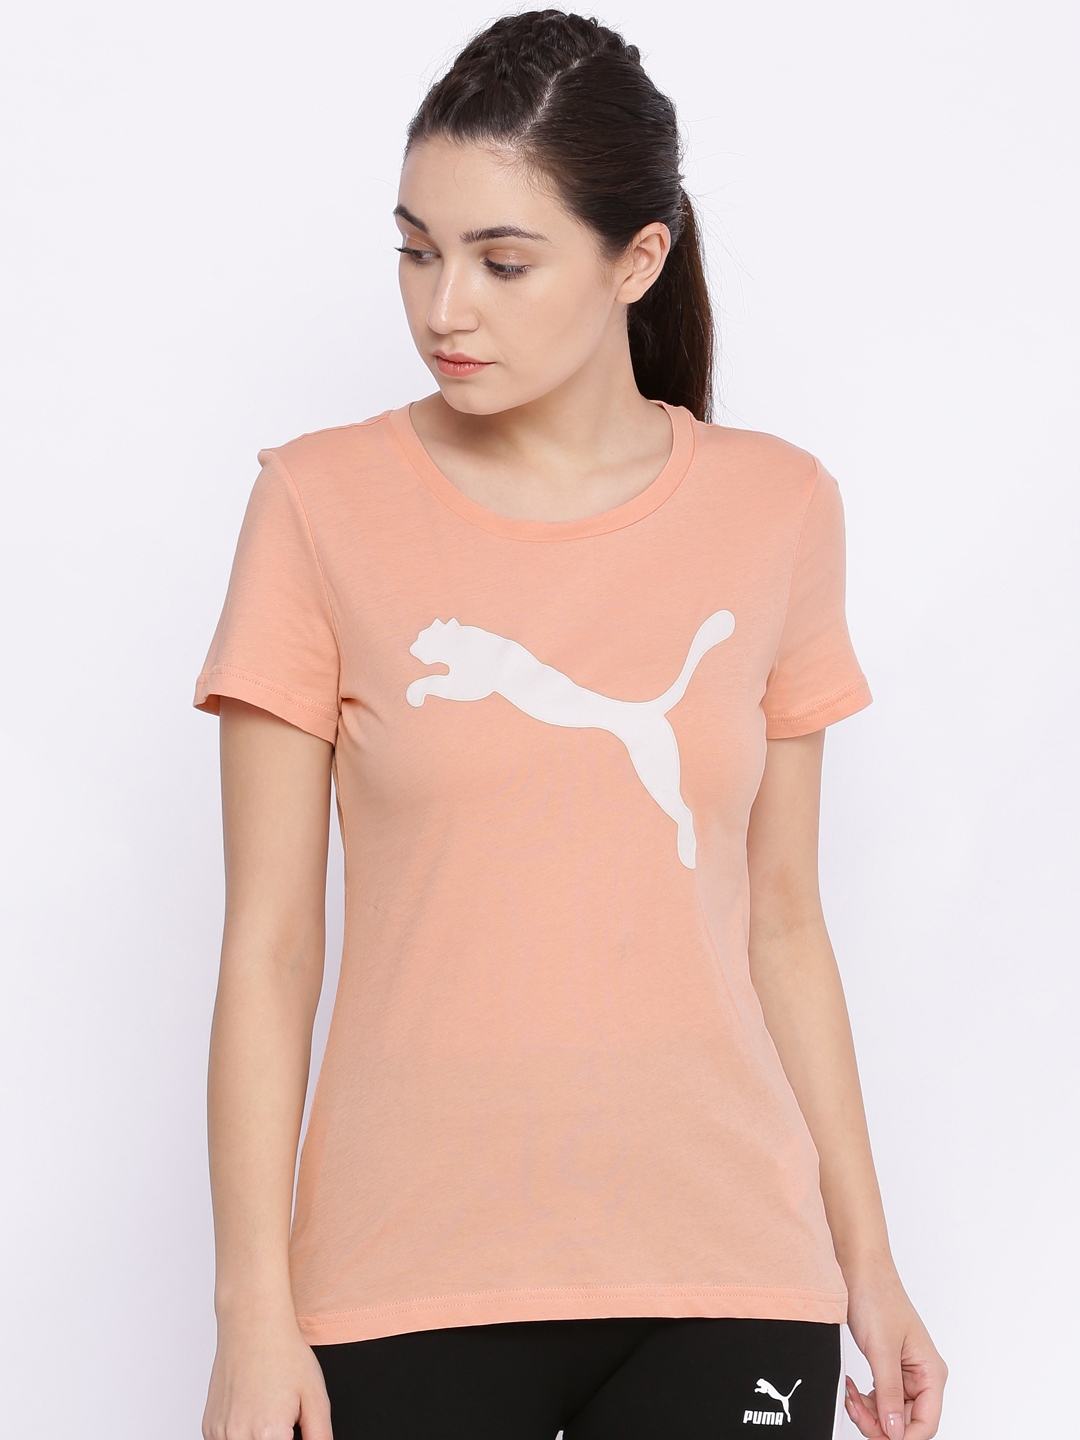 peach puma shirt